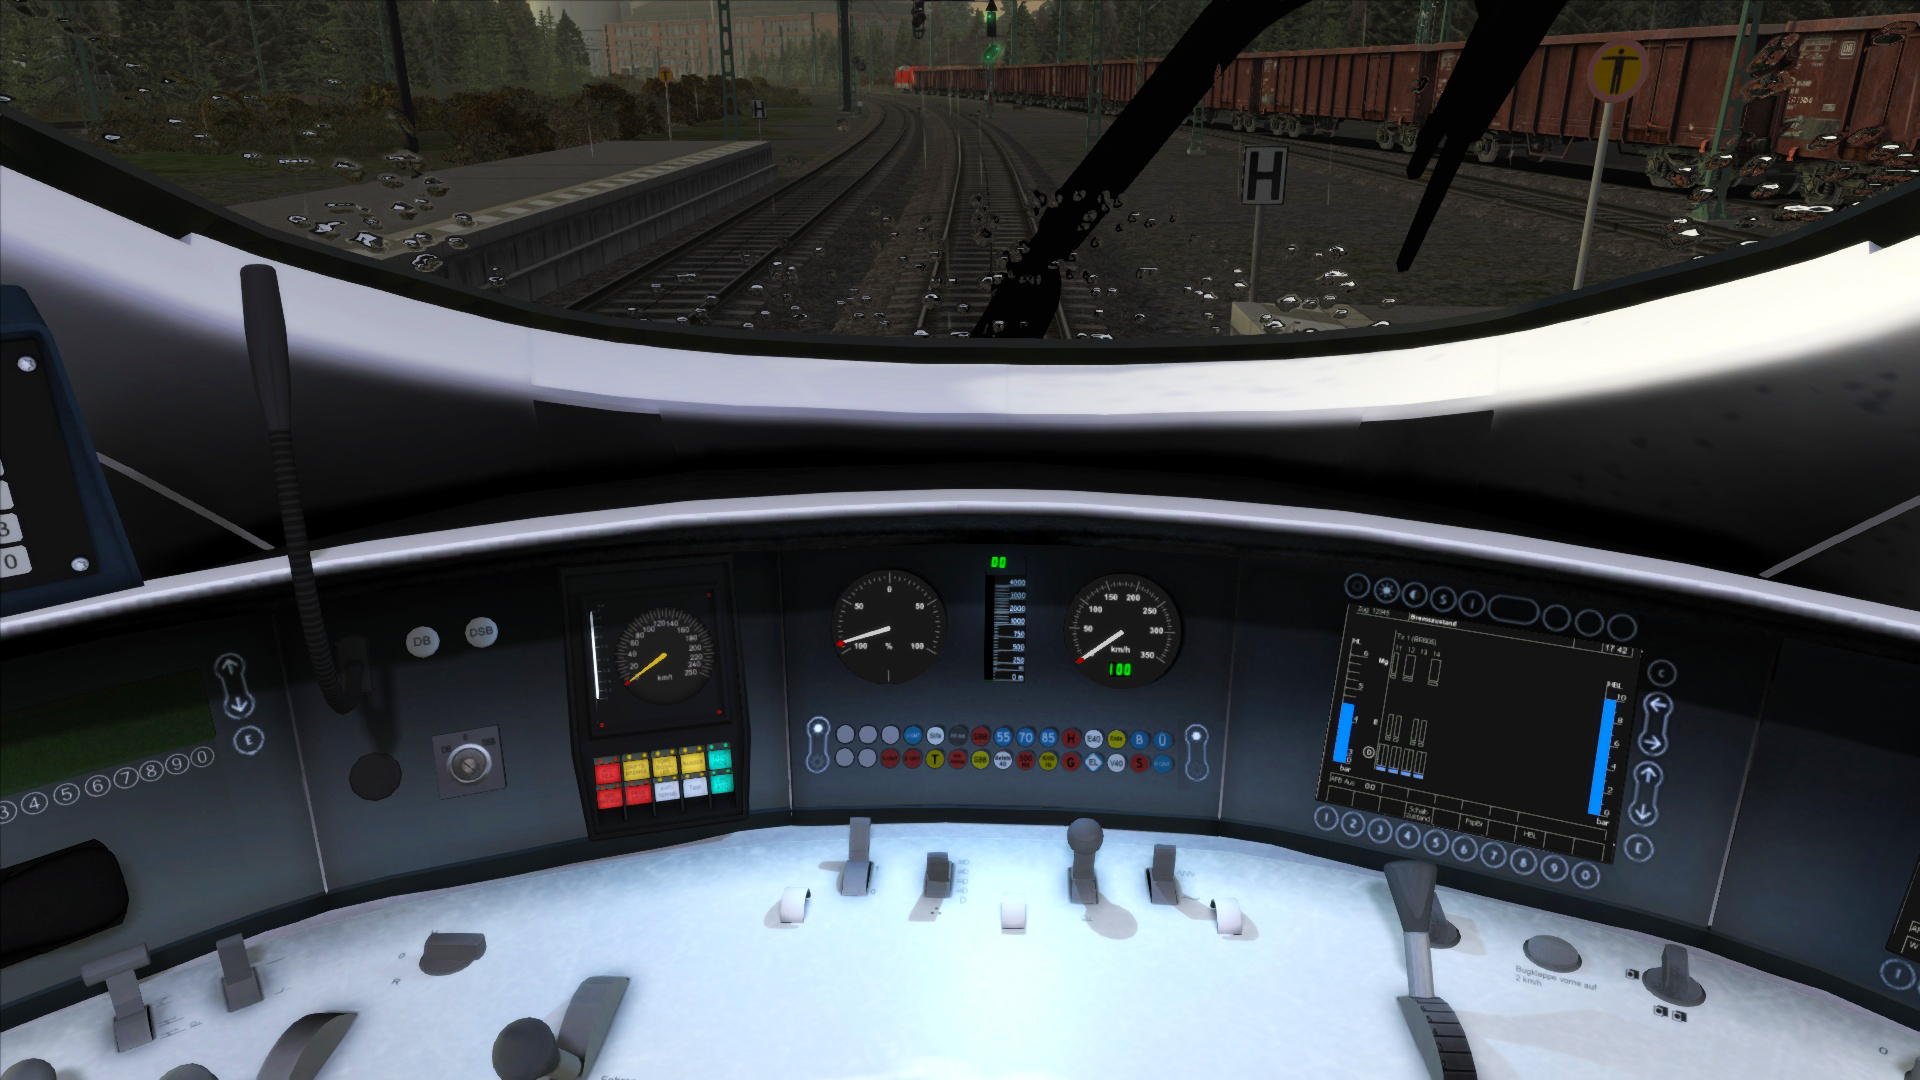 Train Simulator - DB BR 605 ICE TD Add-On DLC Steam CD Key